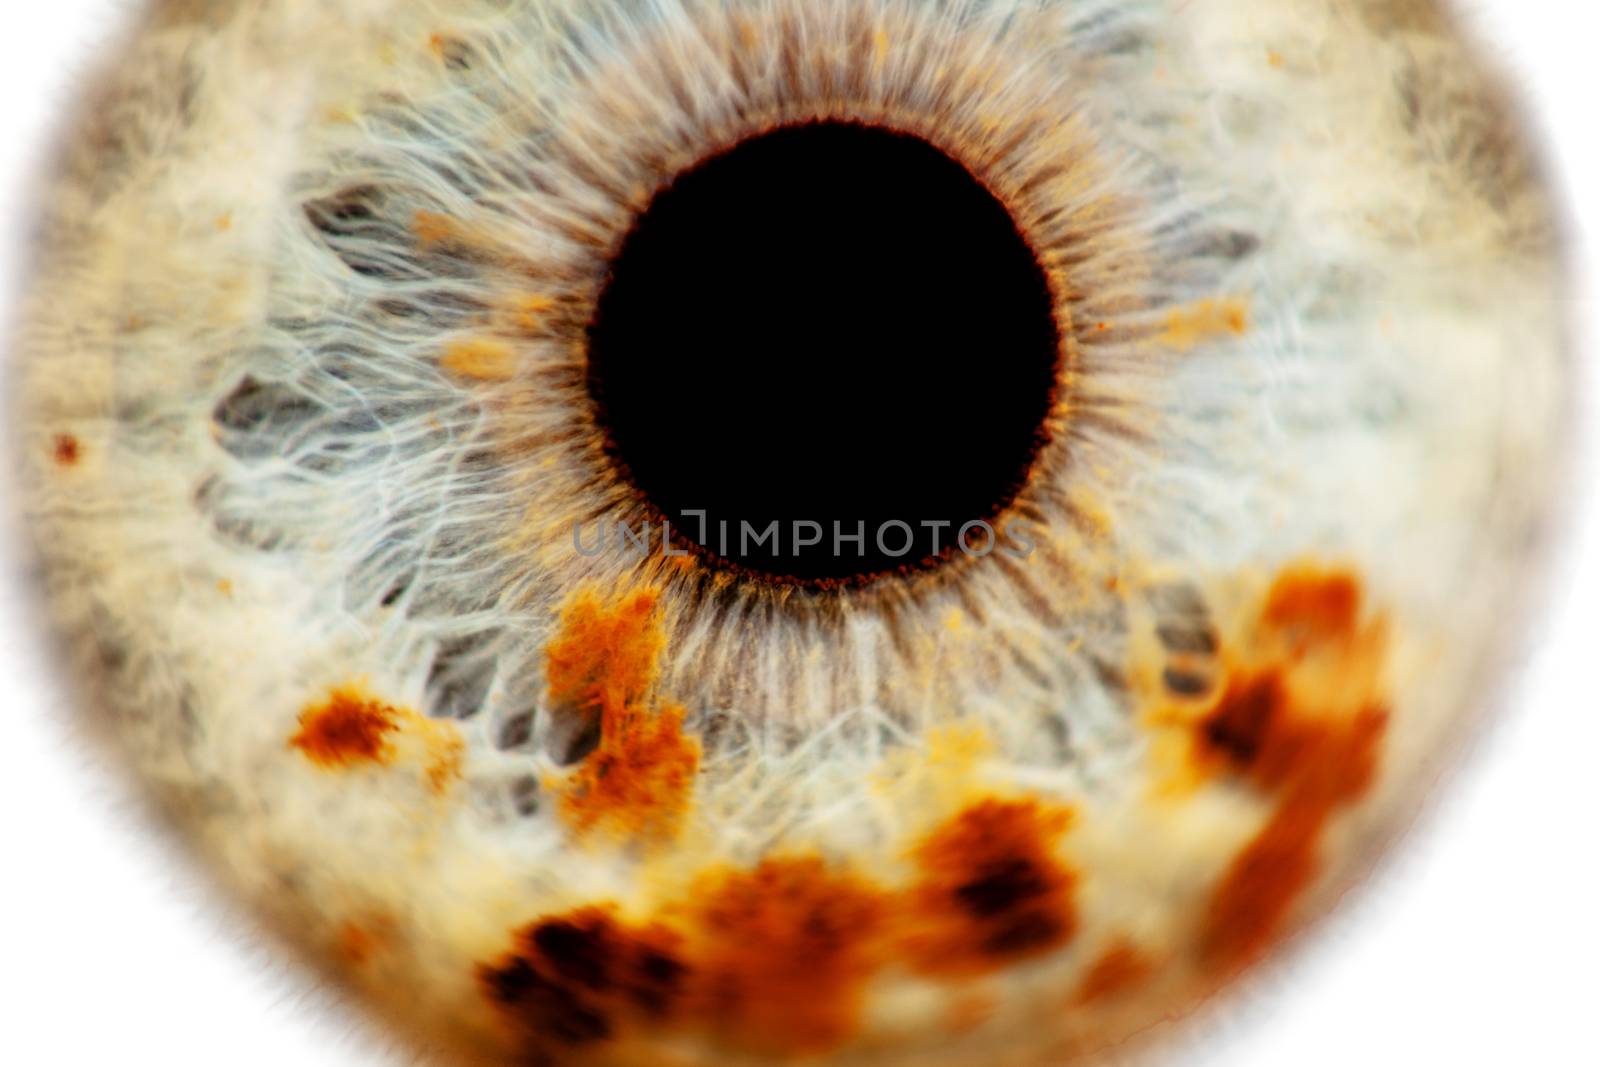 human eye close-up by kokimk